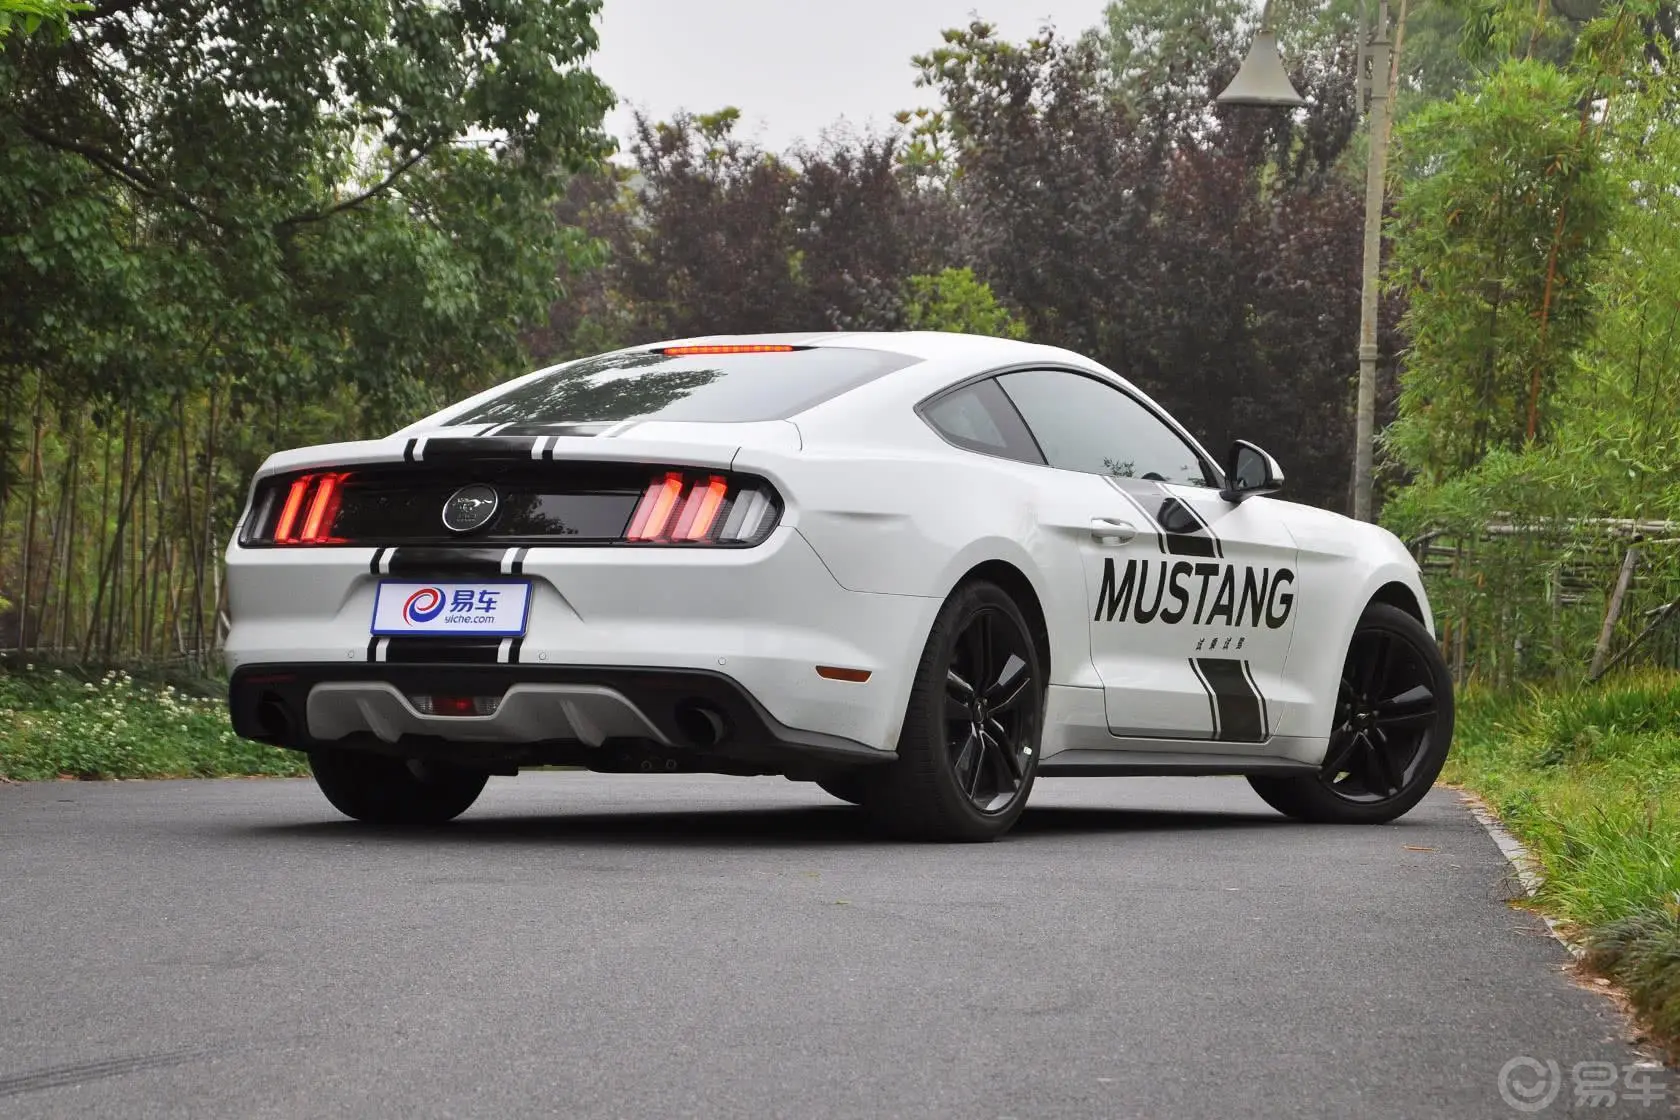 Mustang2.3L 手自一体 50周年纪念版侧后45度车头向右水平